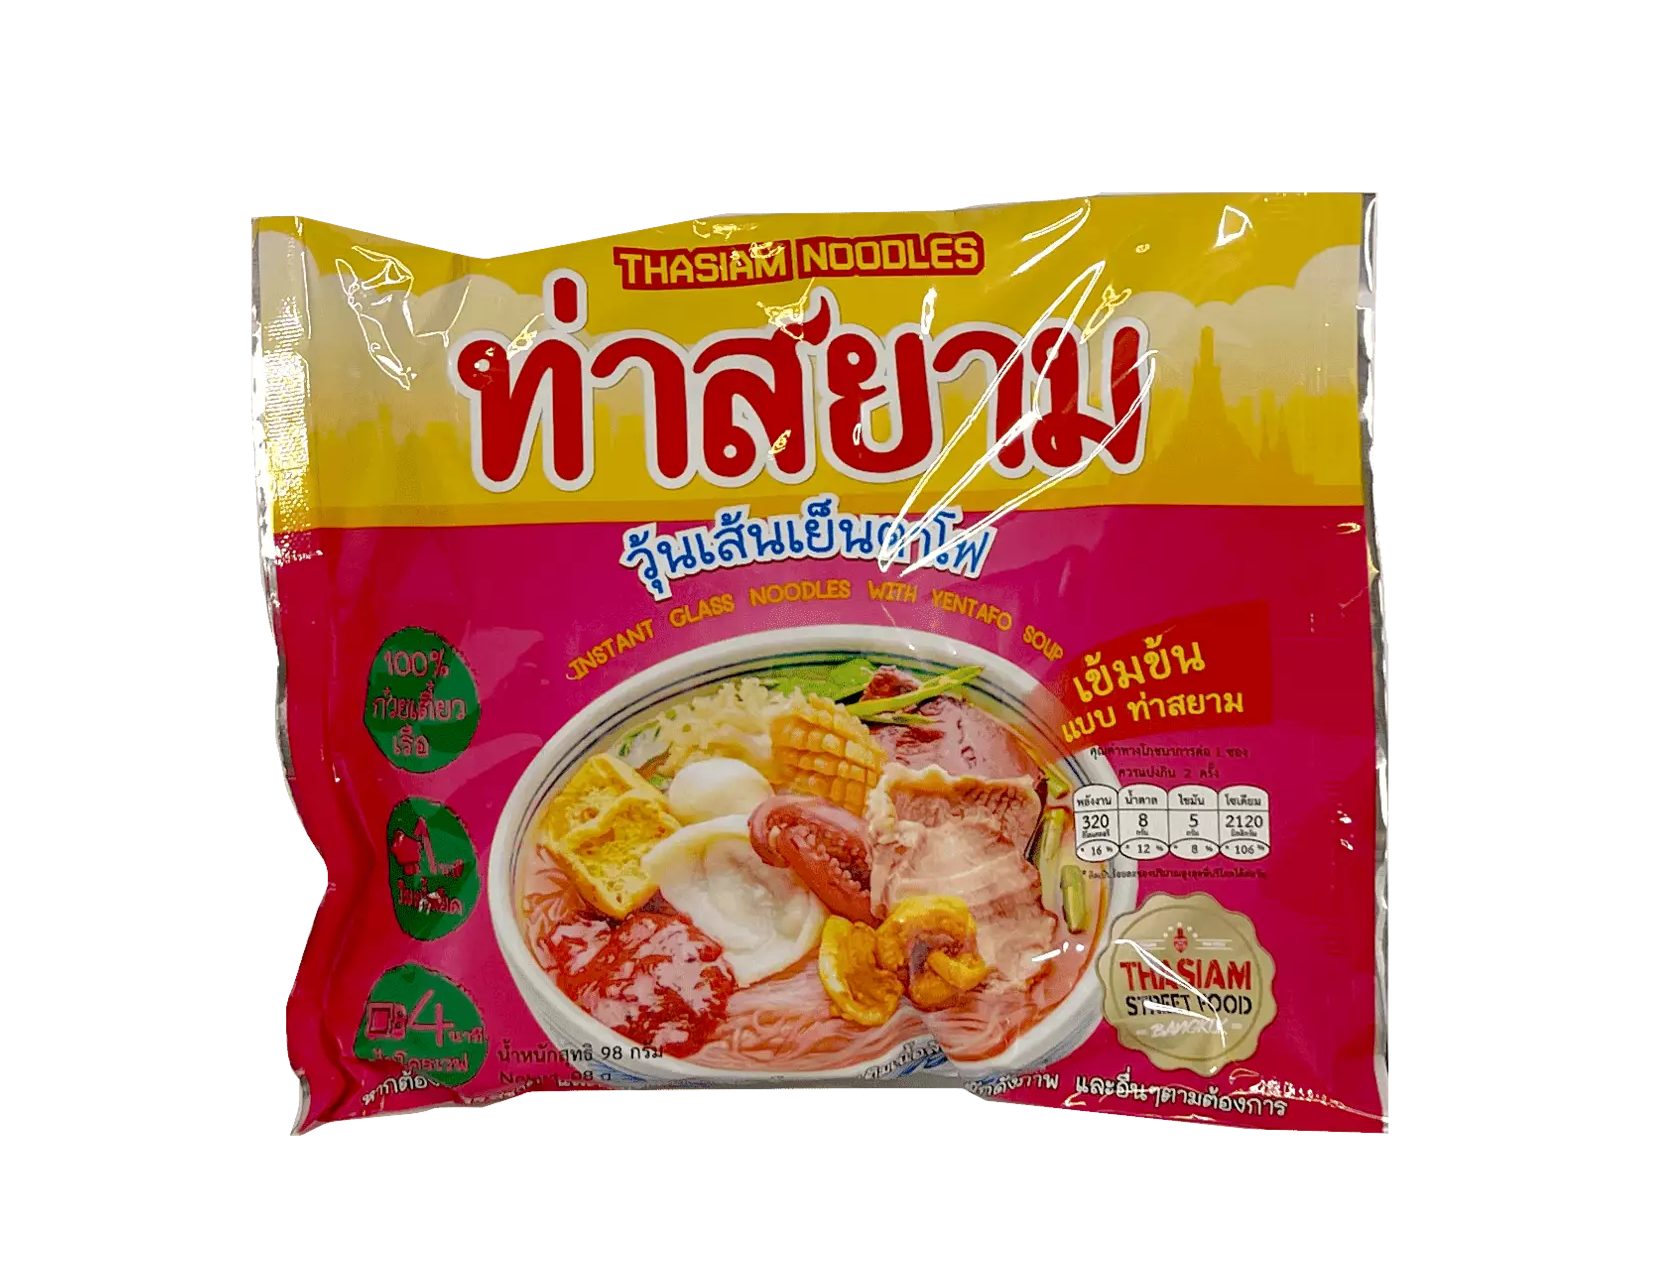 方便面 Yentafo风味 85g THASIAM 泰国